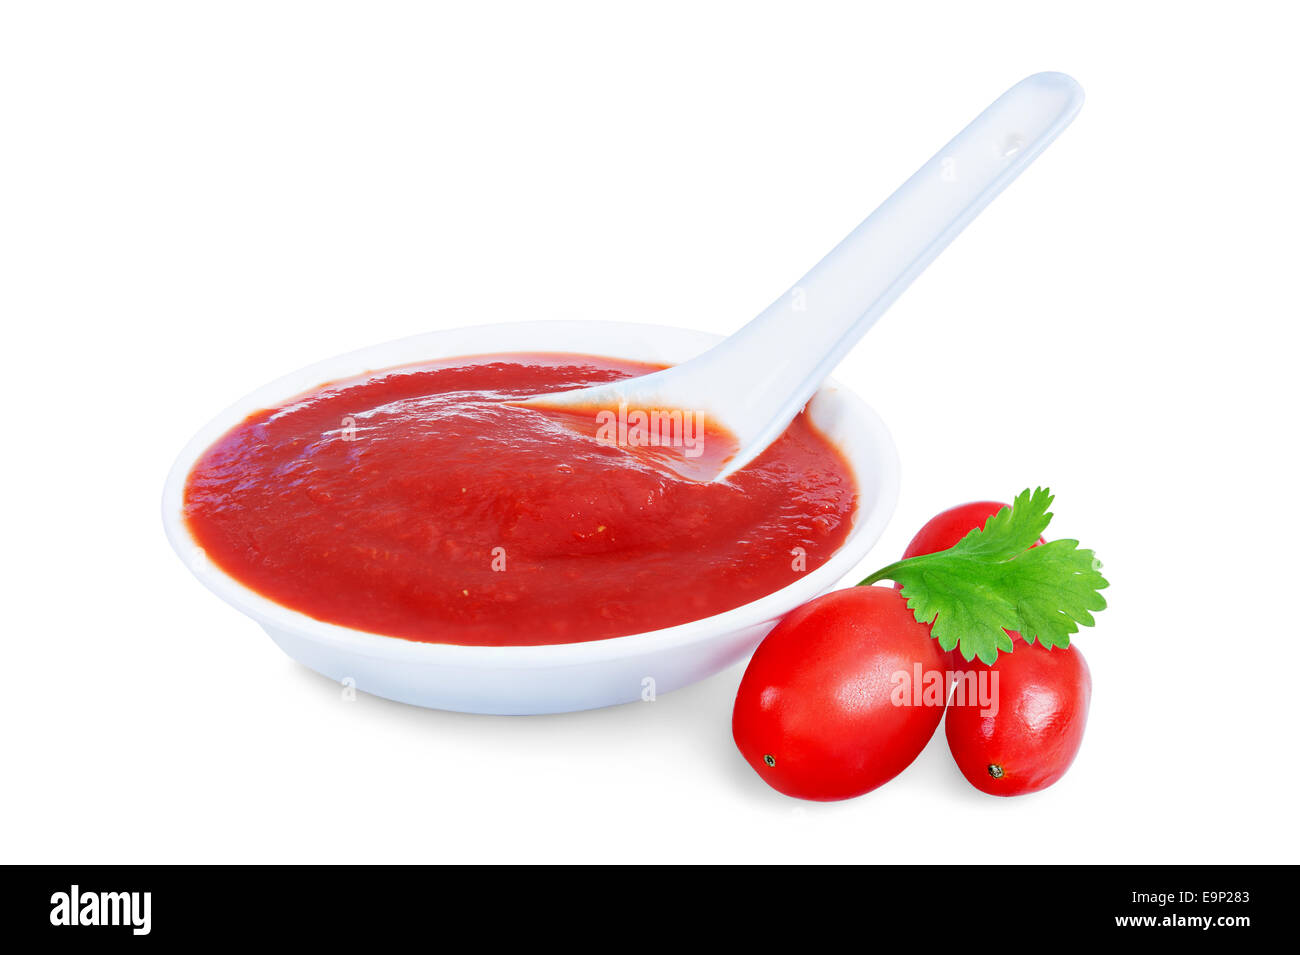 La salsa de tomate ketchup en un recipiente aislado sobre fondo blanco. Foto de stock